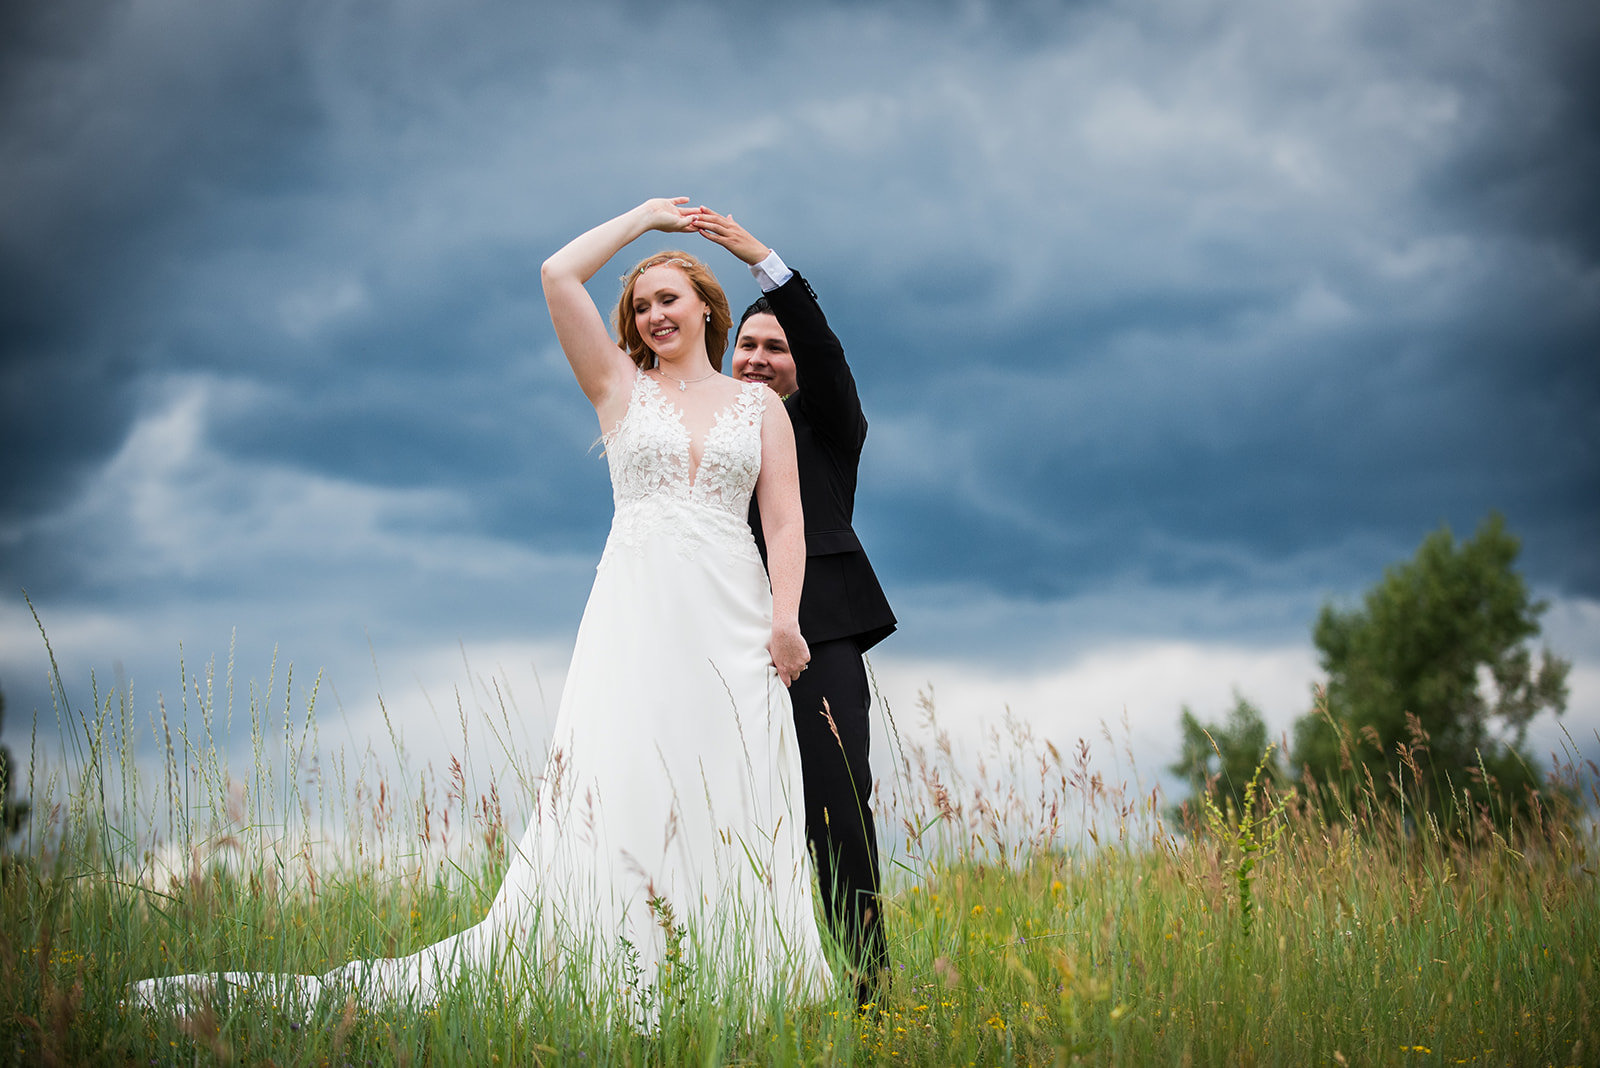 The groom twirls the bride in an open field.